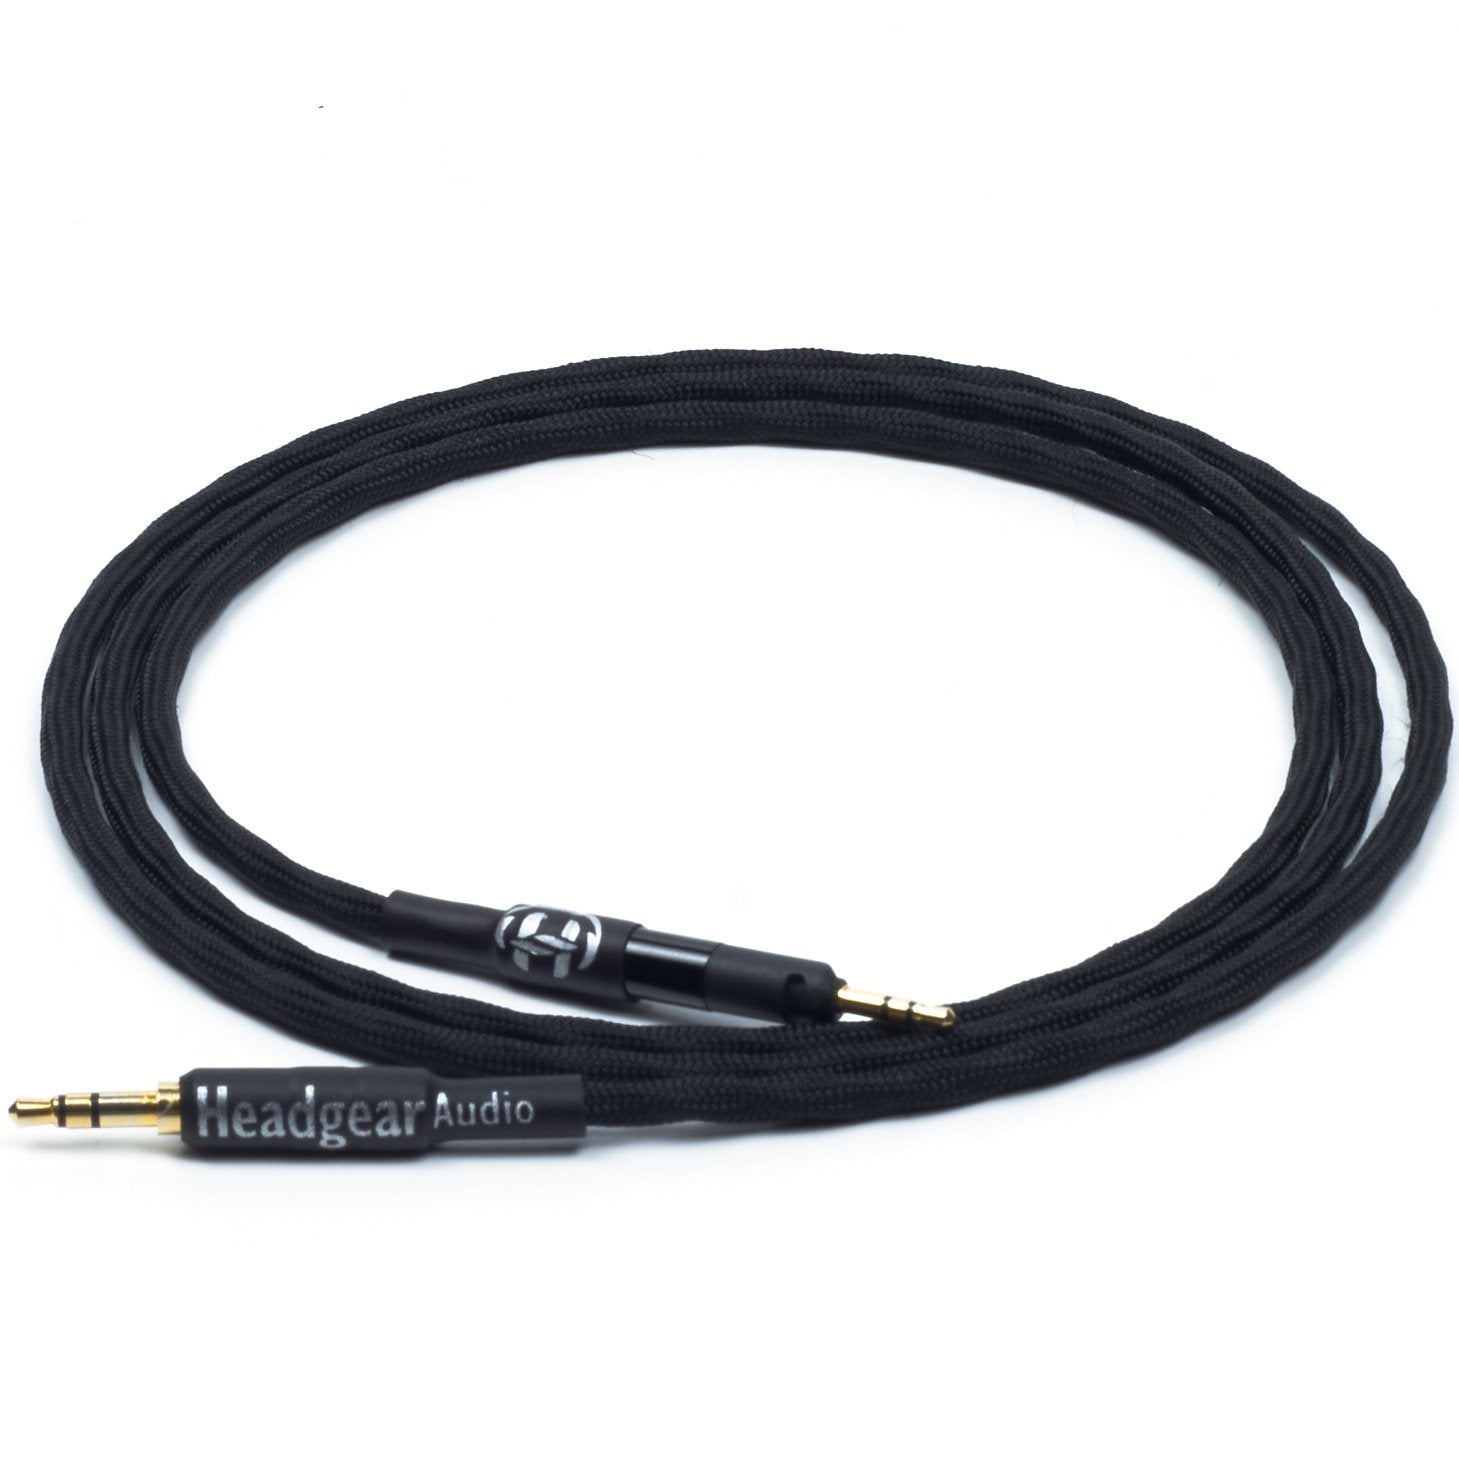  LOL PARTY HD598 Cable auxiliar en espiral de repuesto para auriculares  Sennheiser HD598 Cs HD599 HD569 HD579 HD558 HD518 Cable de audio para  auriculares con adaptador de 0.250 in de largo